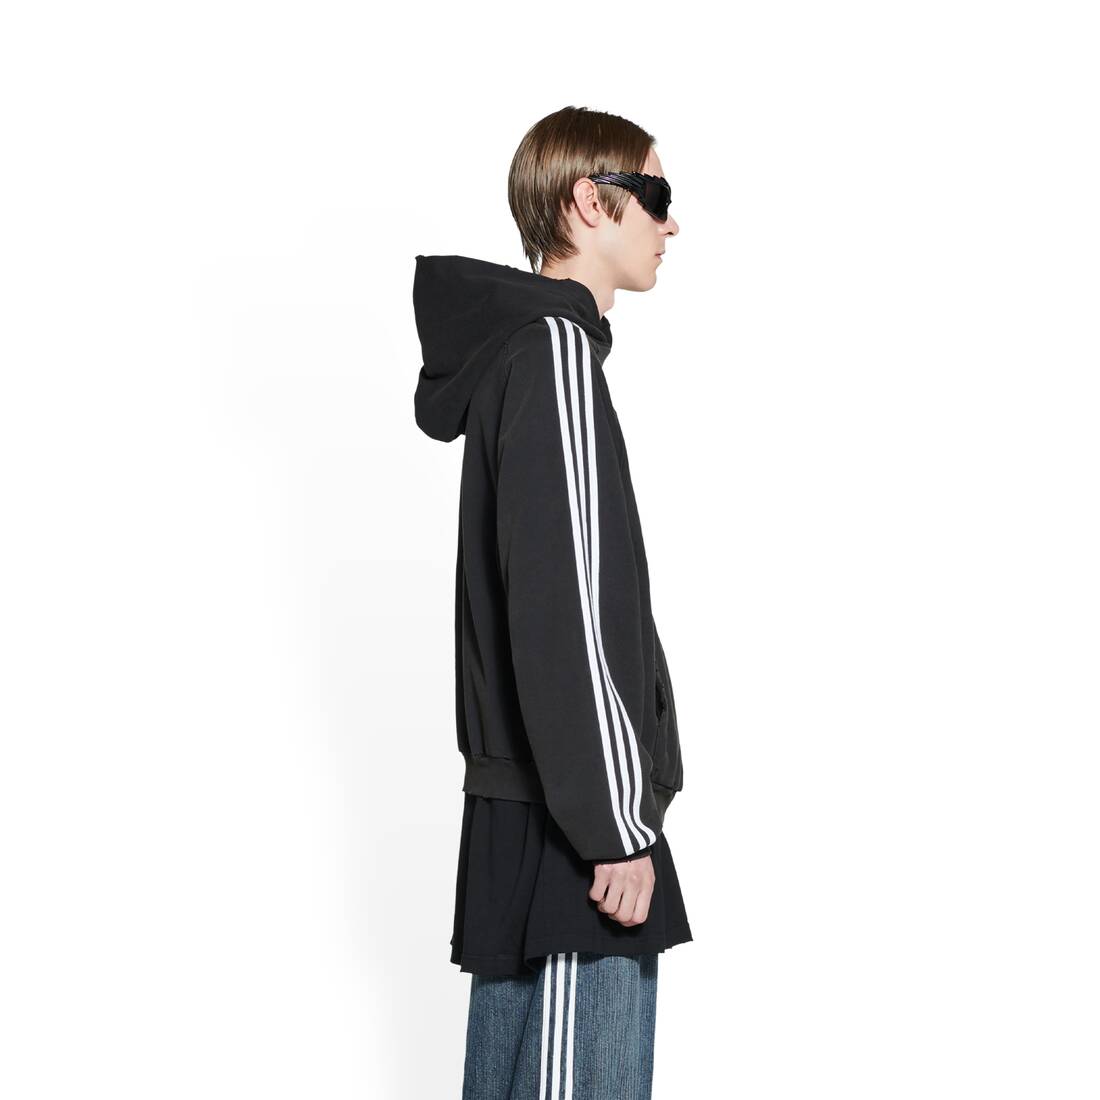 specificeren Leerling sap Men's Balenciaga / Adidas Hoodie Small Fit in Black | Balenciaga US